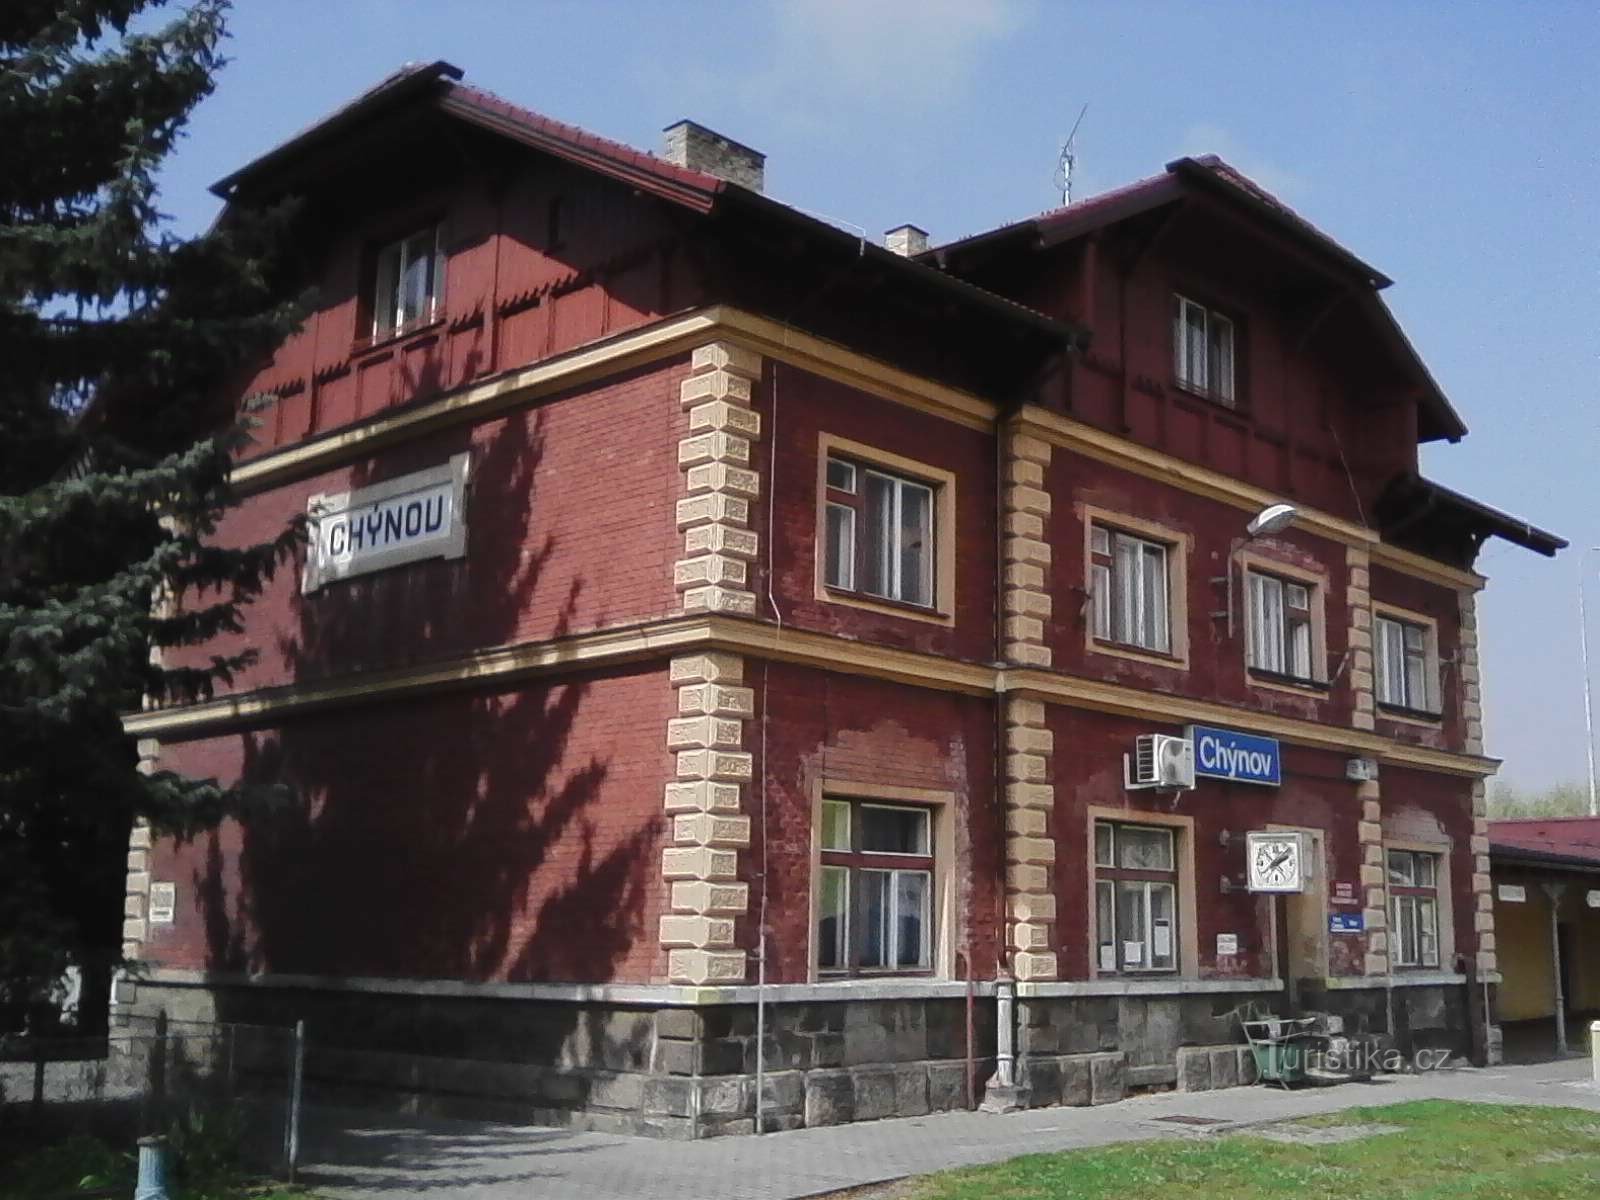 1. Station i Chýnov på linje 224, Tábor - Horní Cerekev, 69 km.